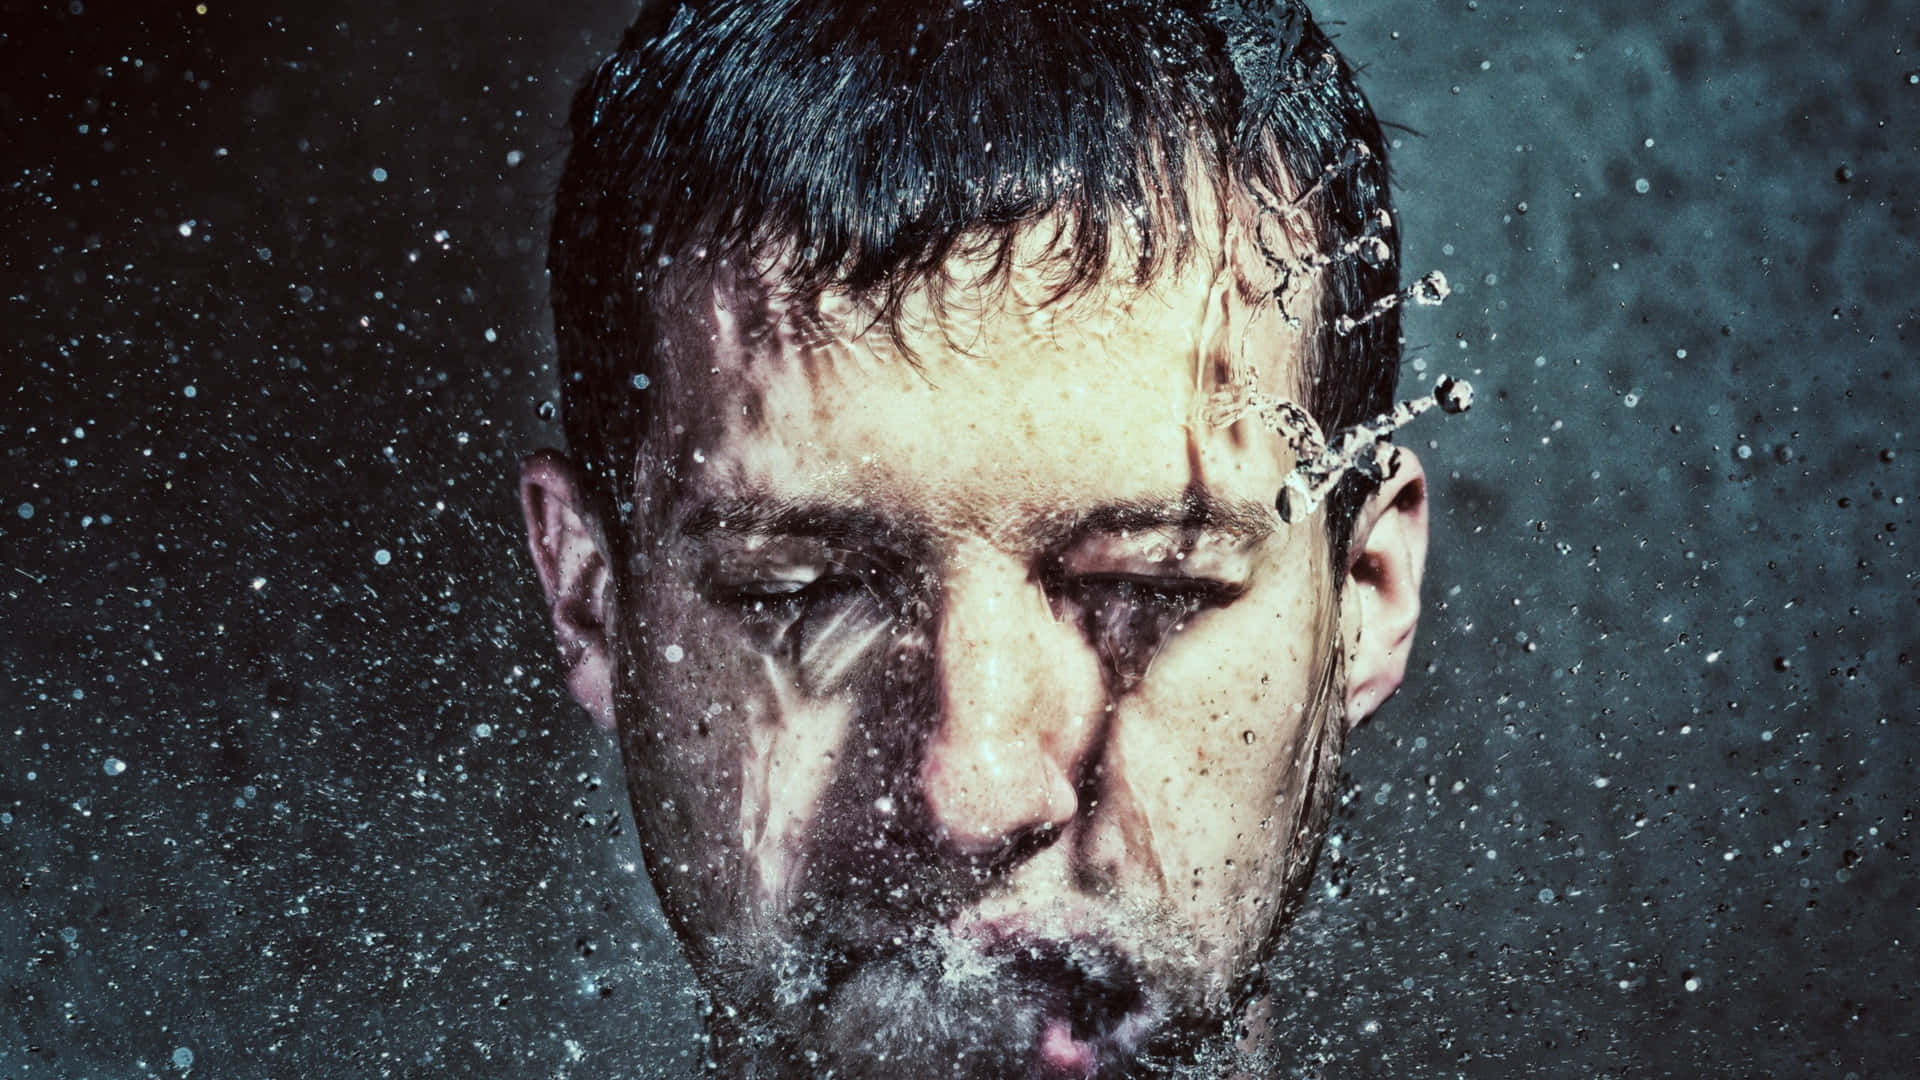 Mann,dessen Gesicht Von Wasser Bespritzt Wird. Wallpaper